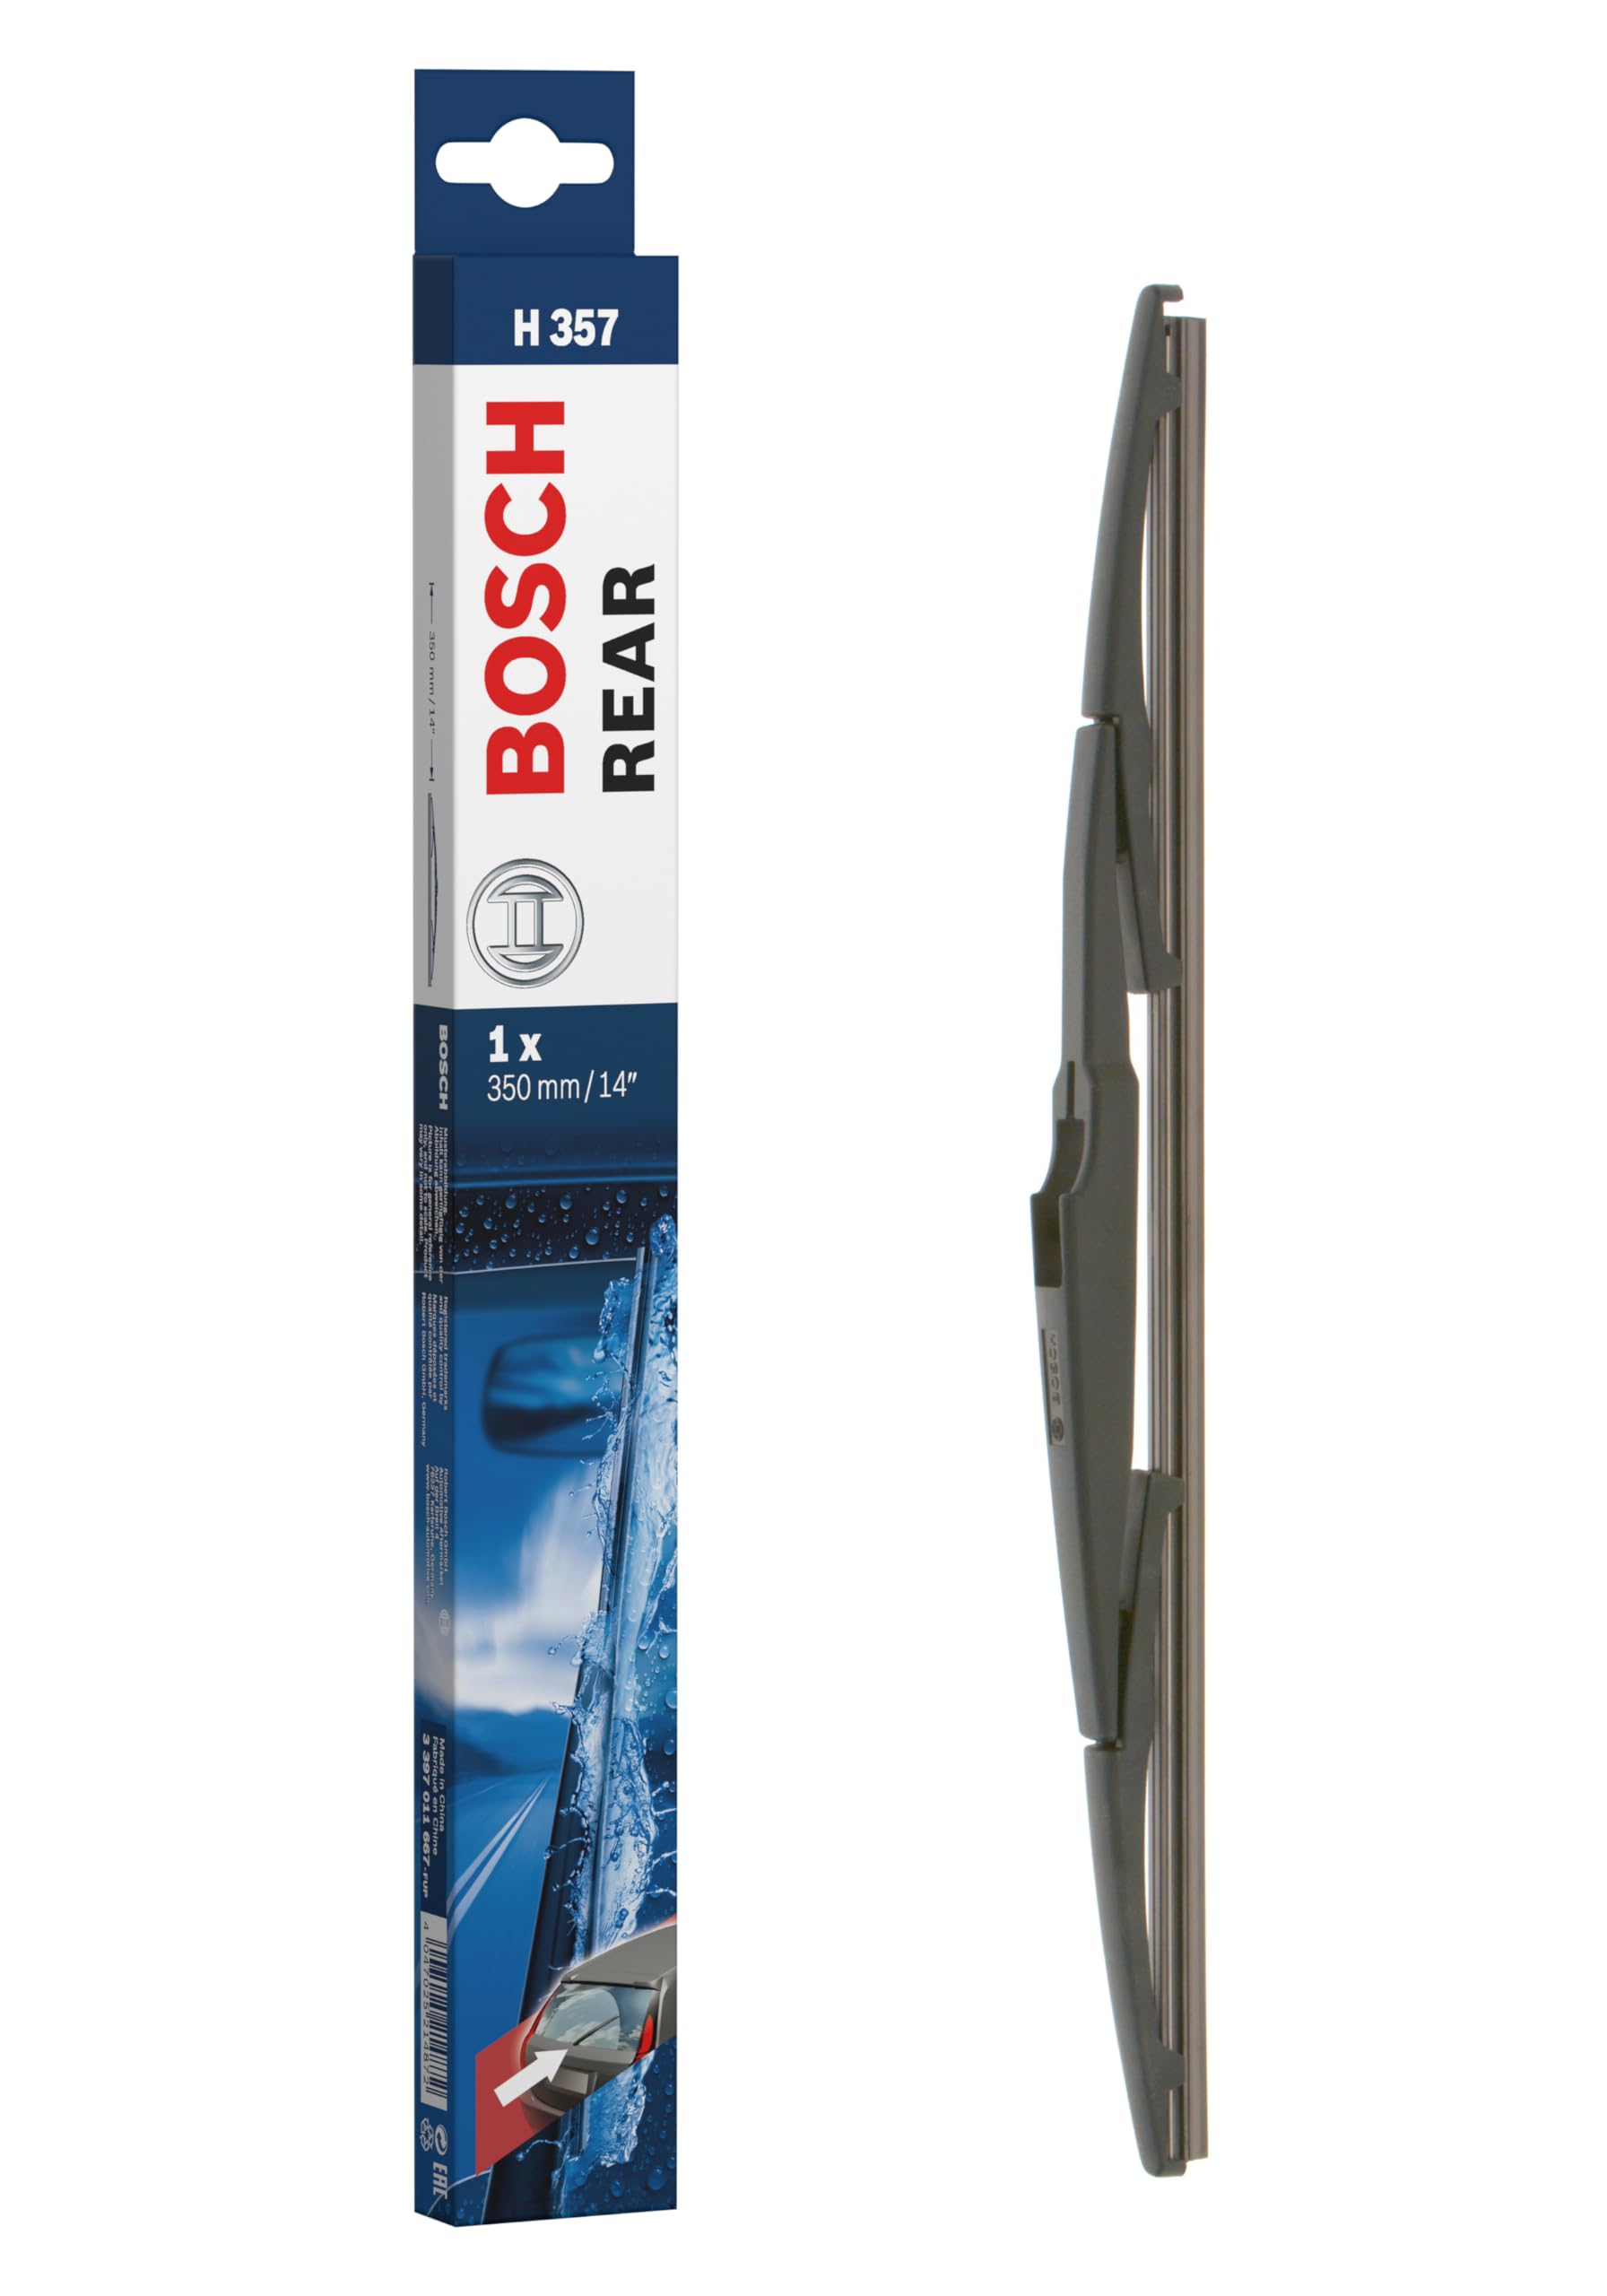 Bosch Scheibenwischer Rear H357, Länge: 350mm – Scheibenwischer für Heckscheibe von Bosch Automotive